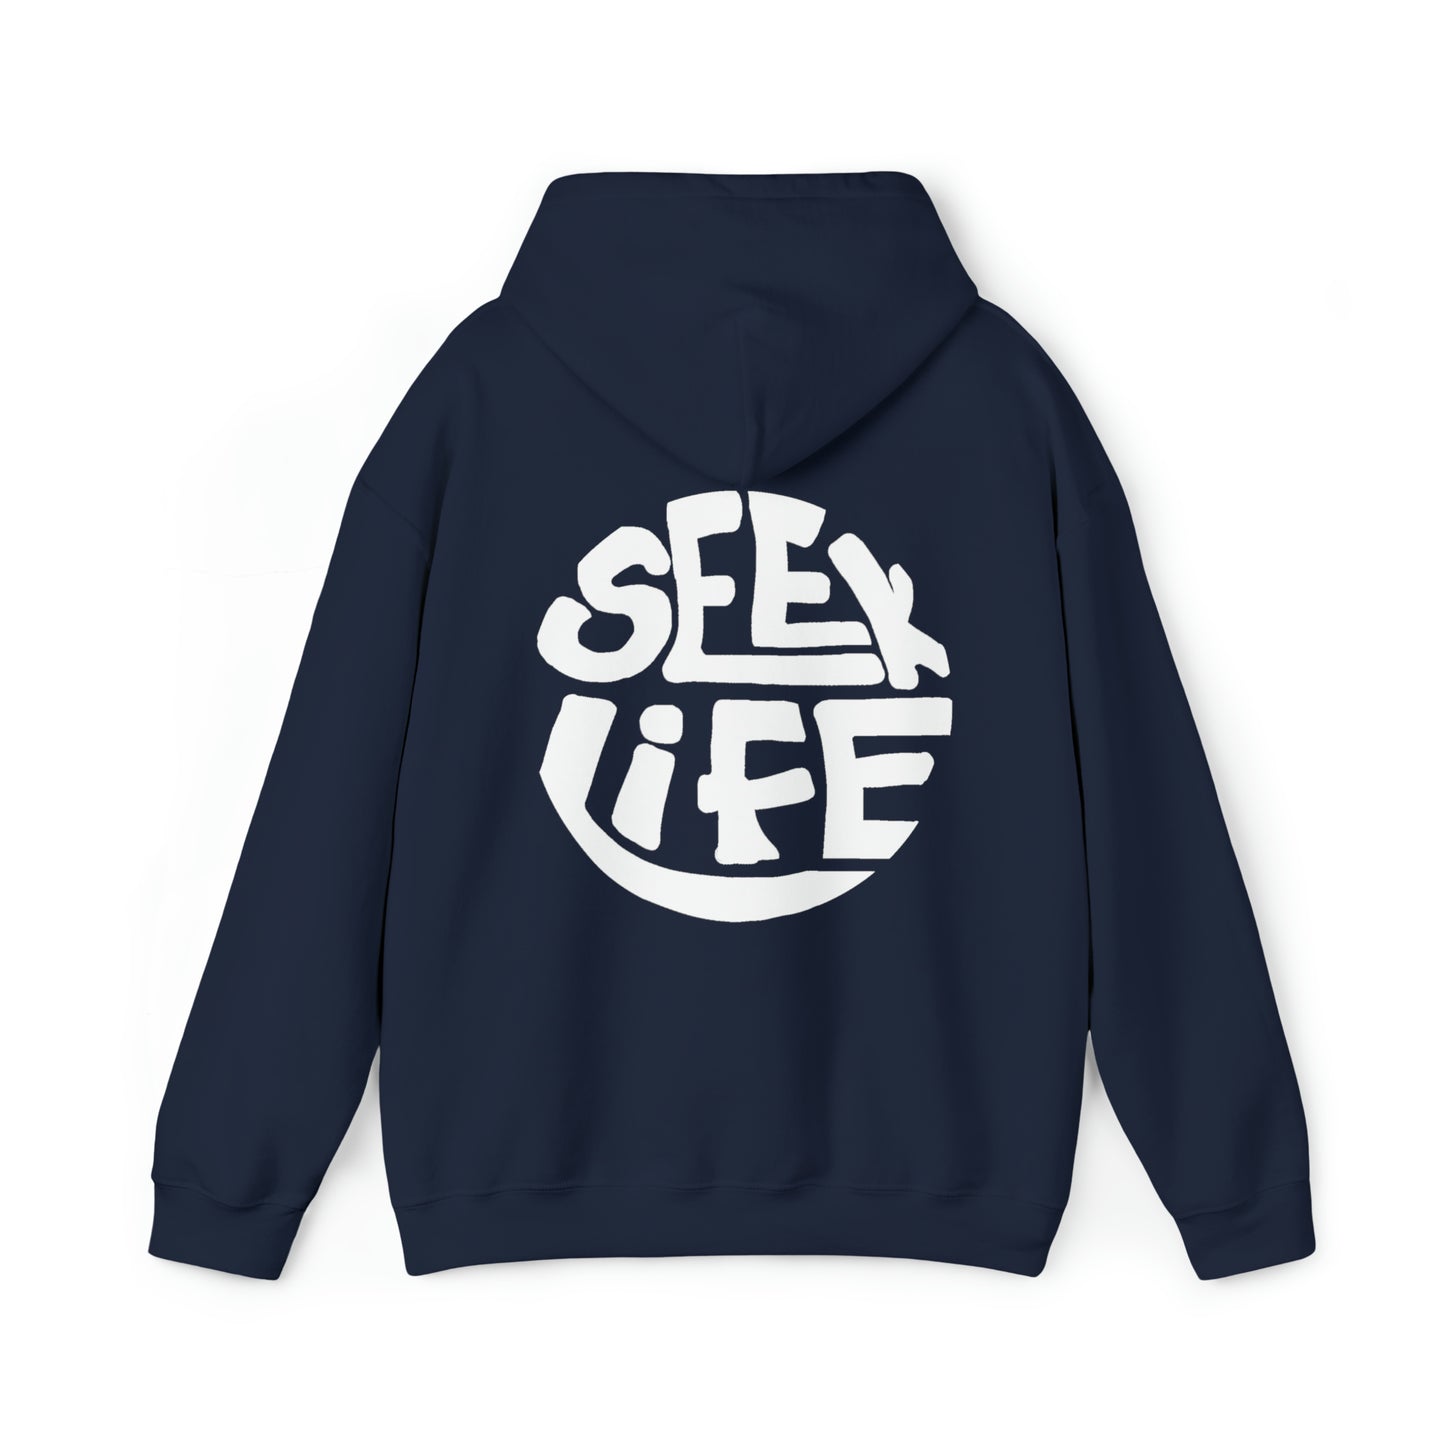 SEEK LIFE Surf Co. hoodie